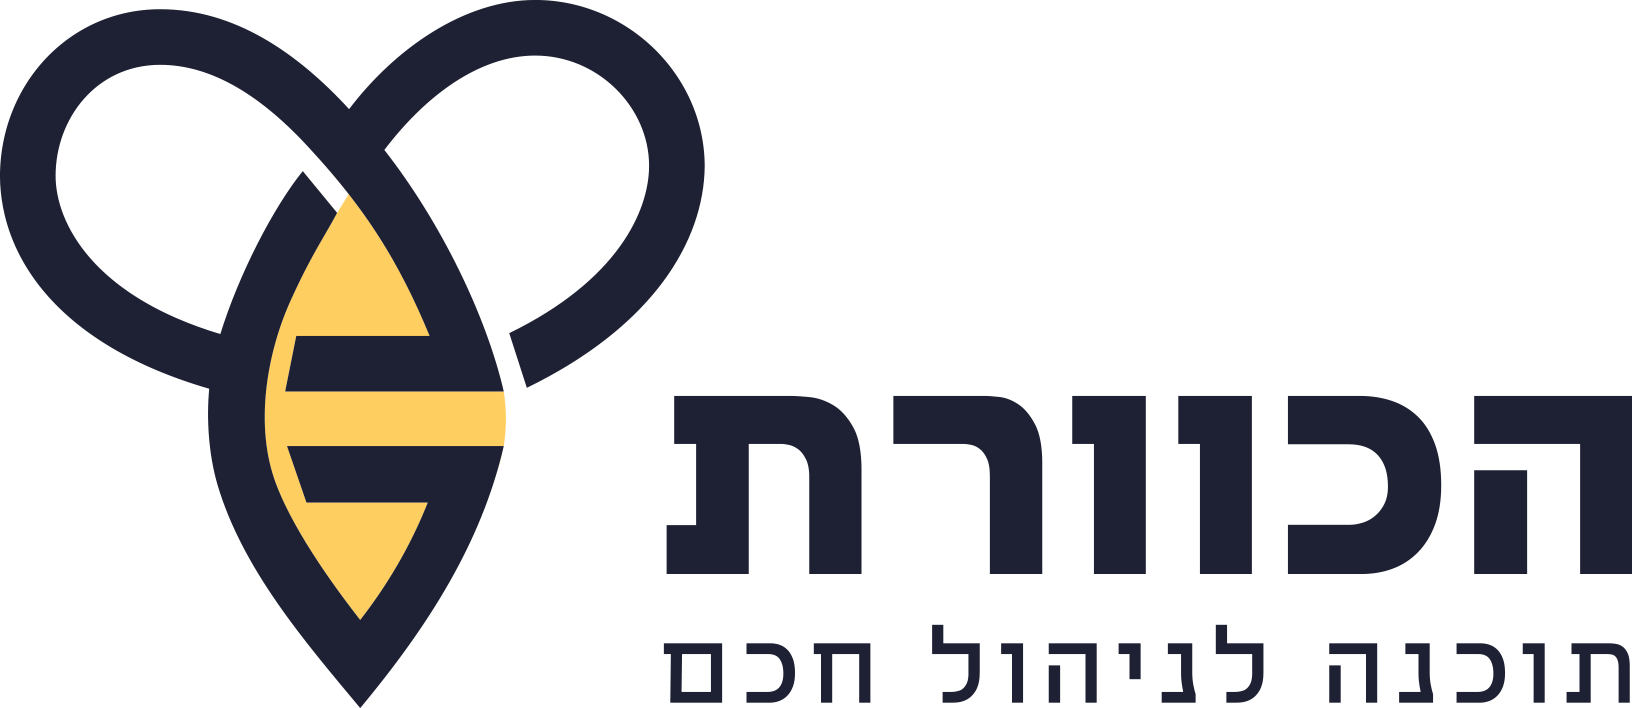 Kaveret-Partner-logo